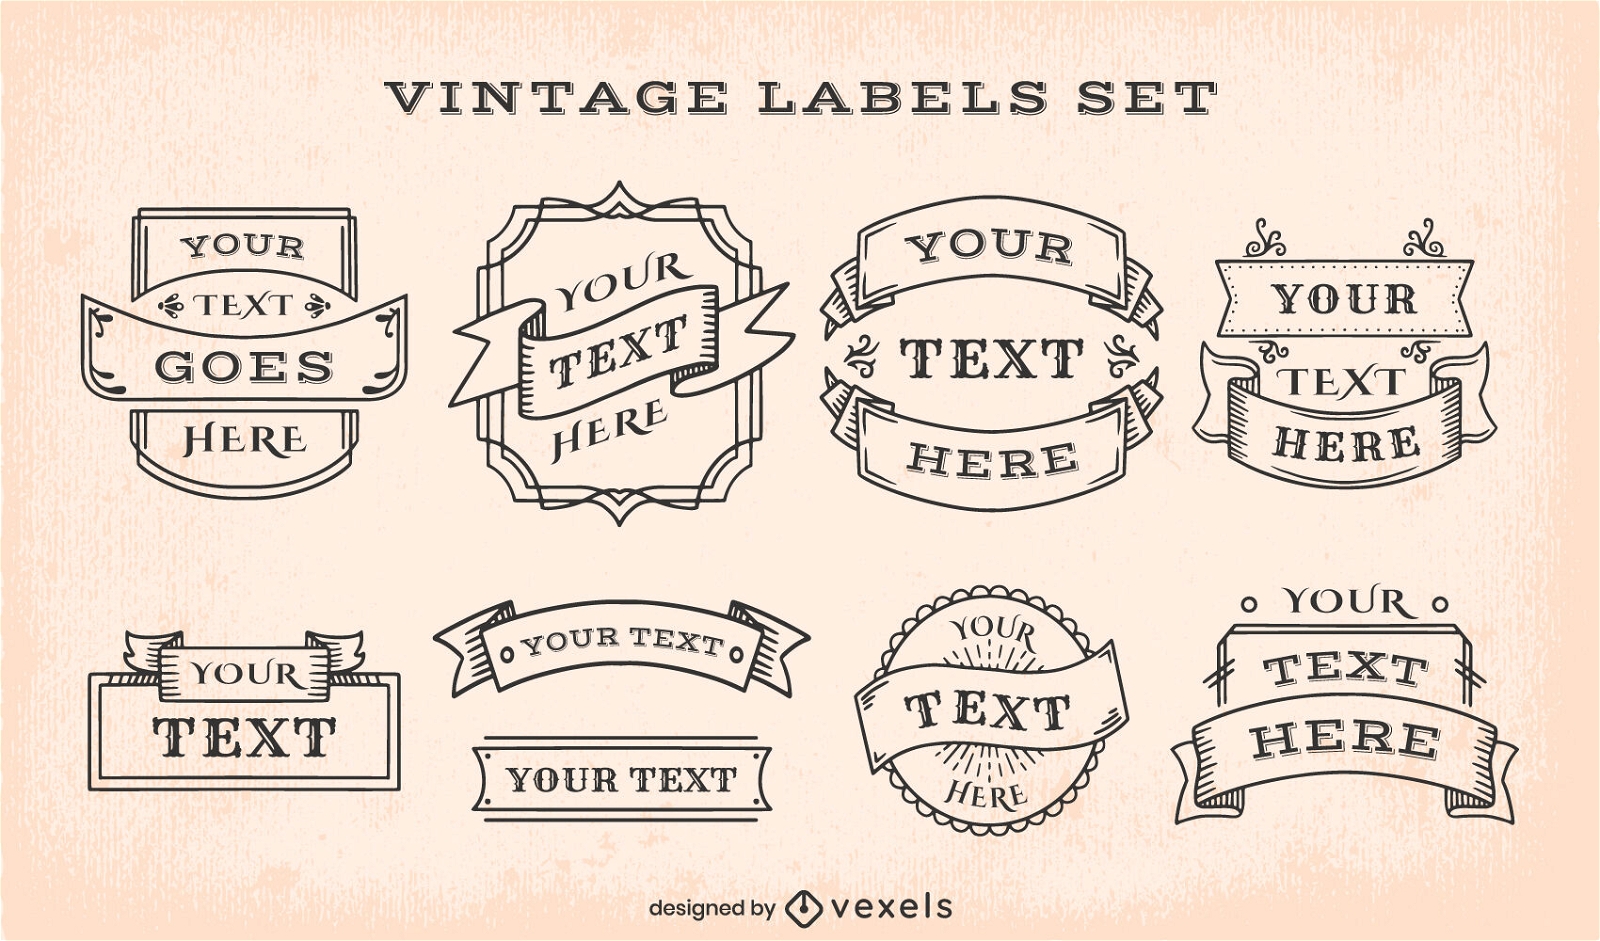 Fitas vintage personaliz?veis e conjunto de etiquetas